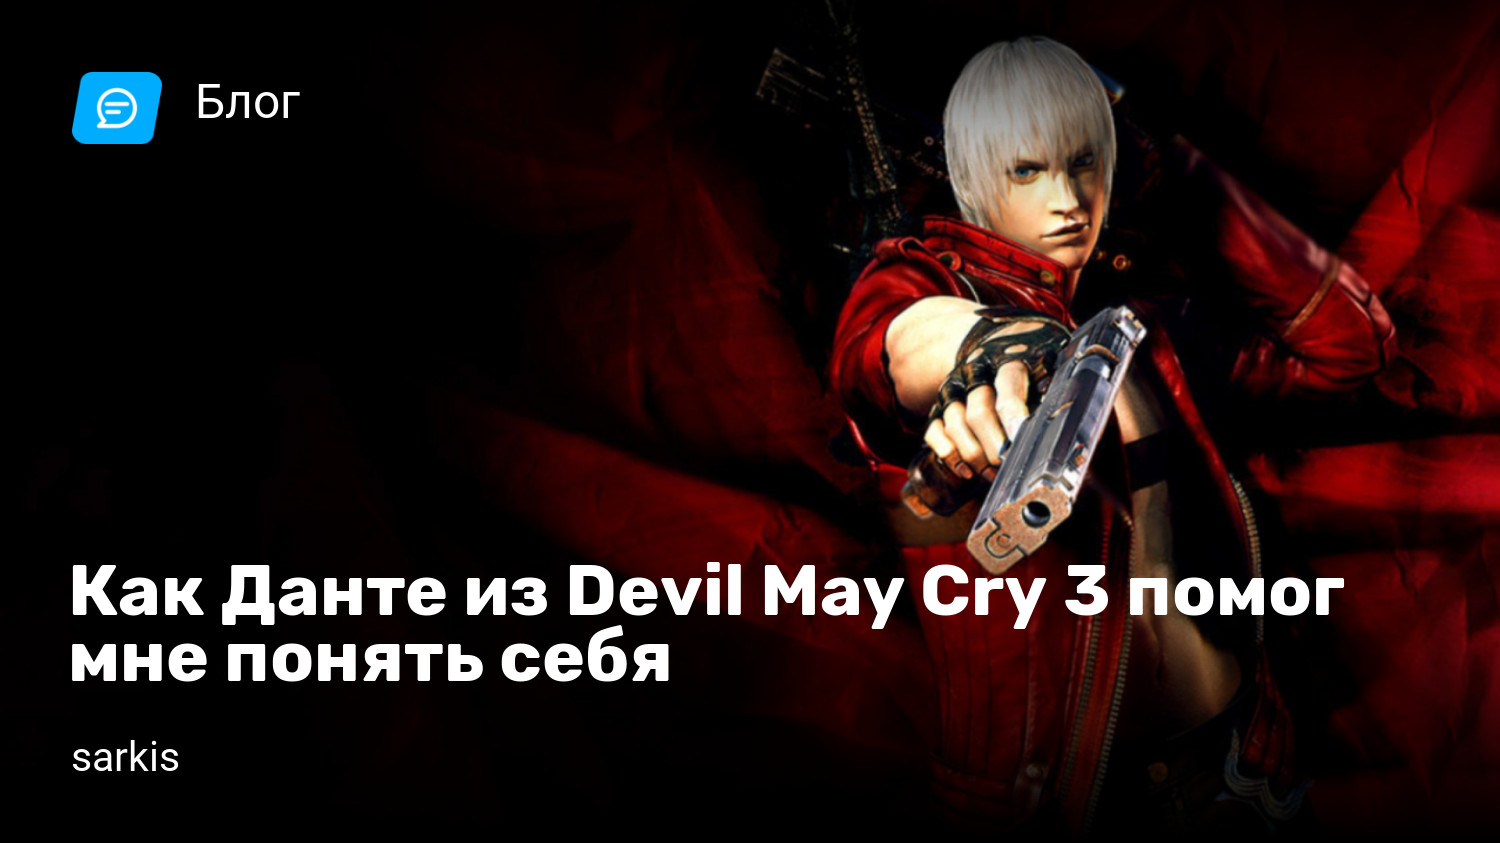 Как настроить коллекцию Devil May Cry HD